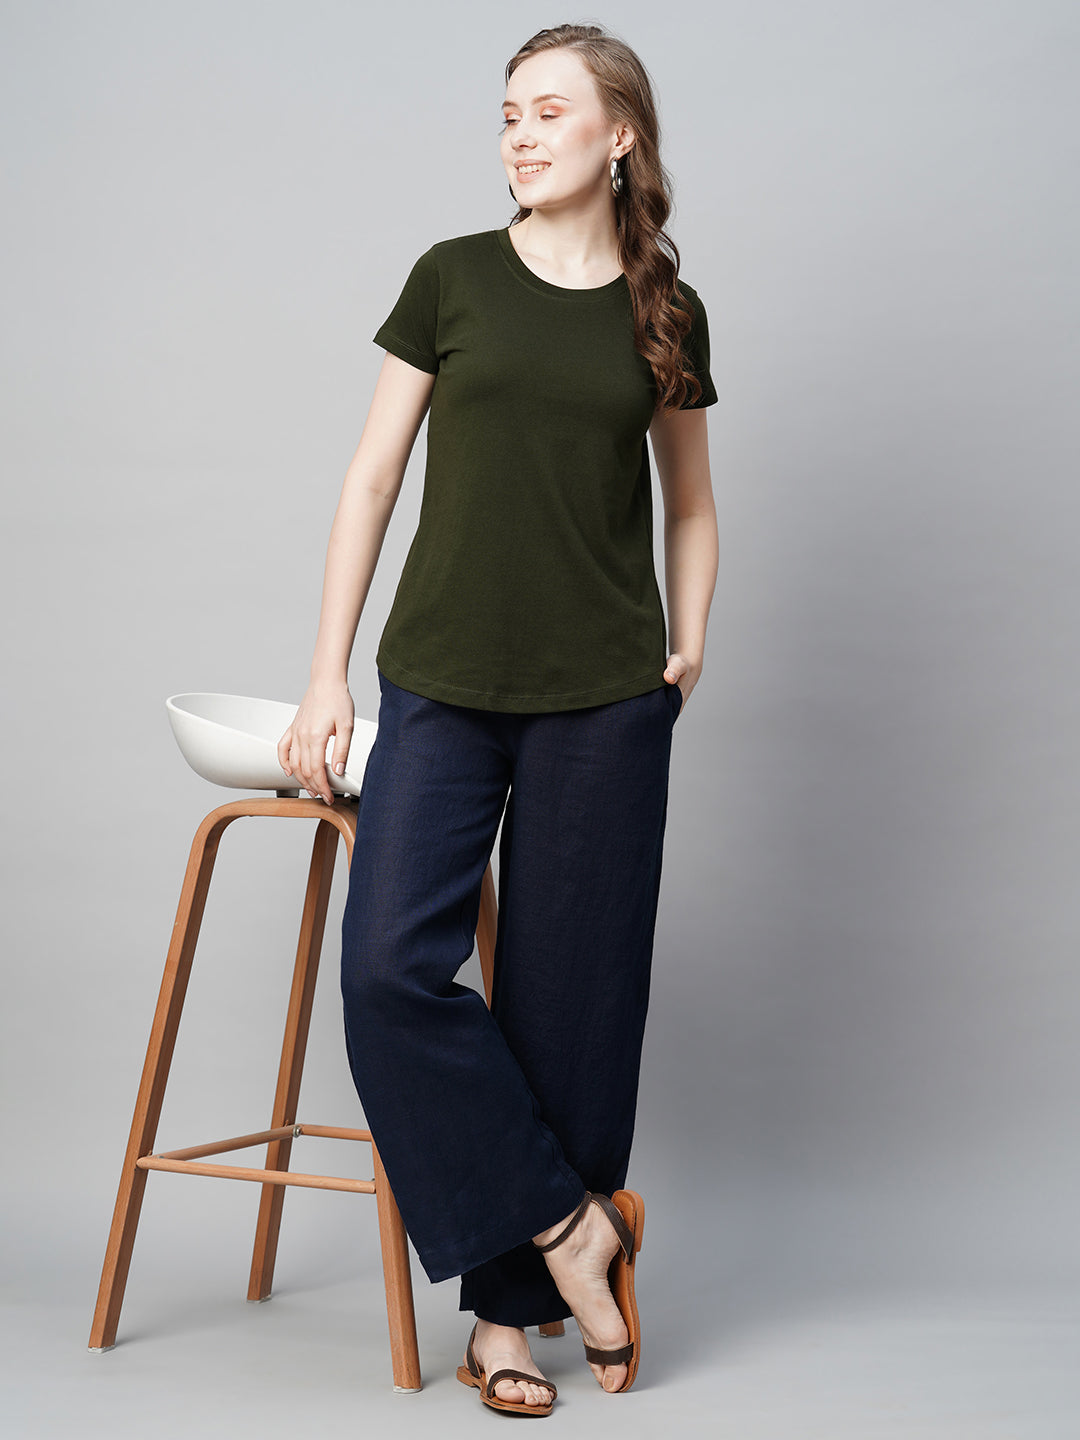 Women's Darkgreen Cotton Regular Fit Tshirt